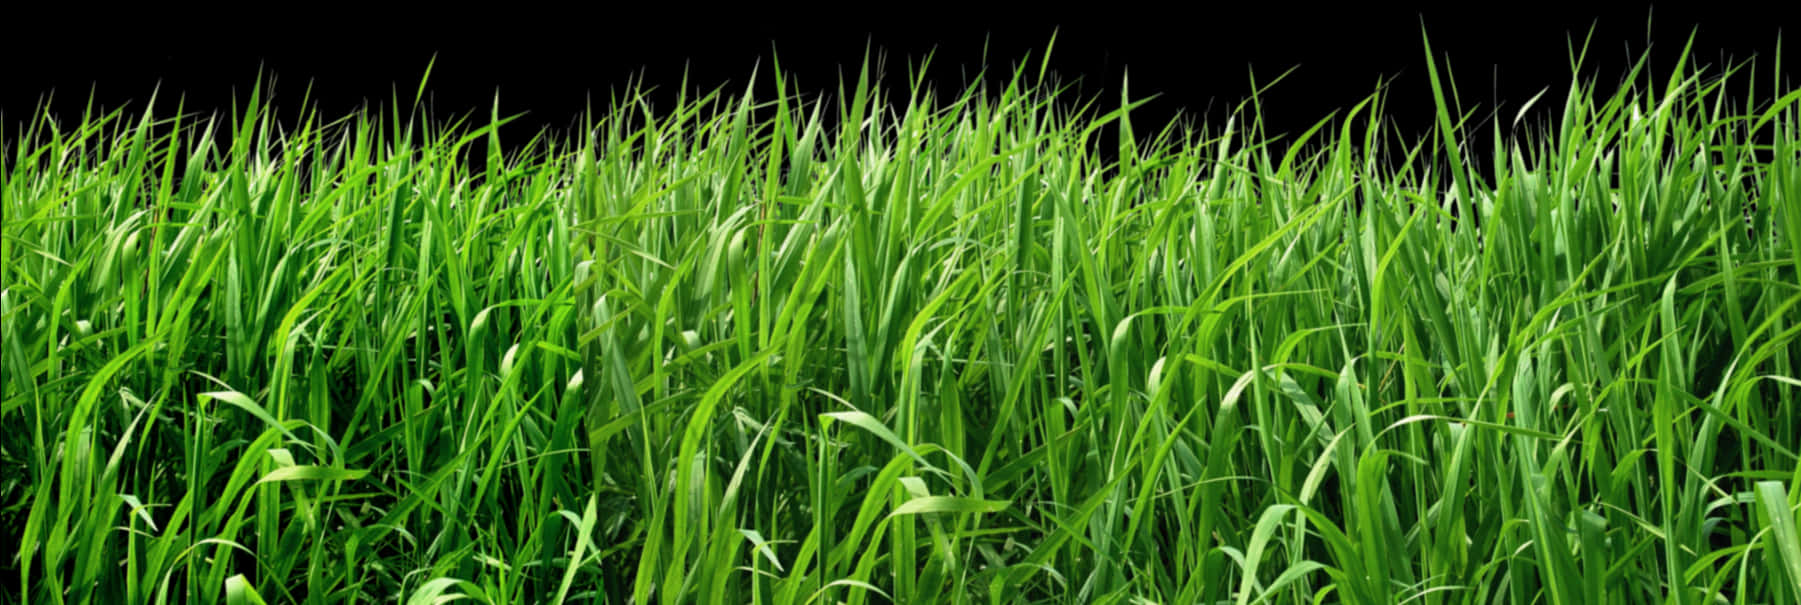 Vibrant Green Grass Texture